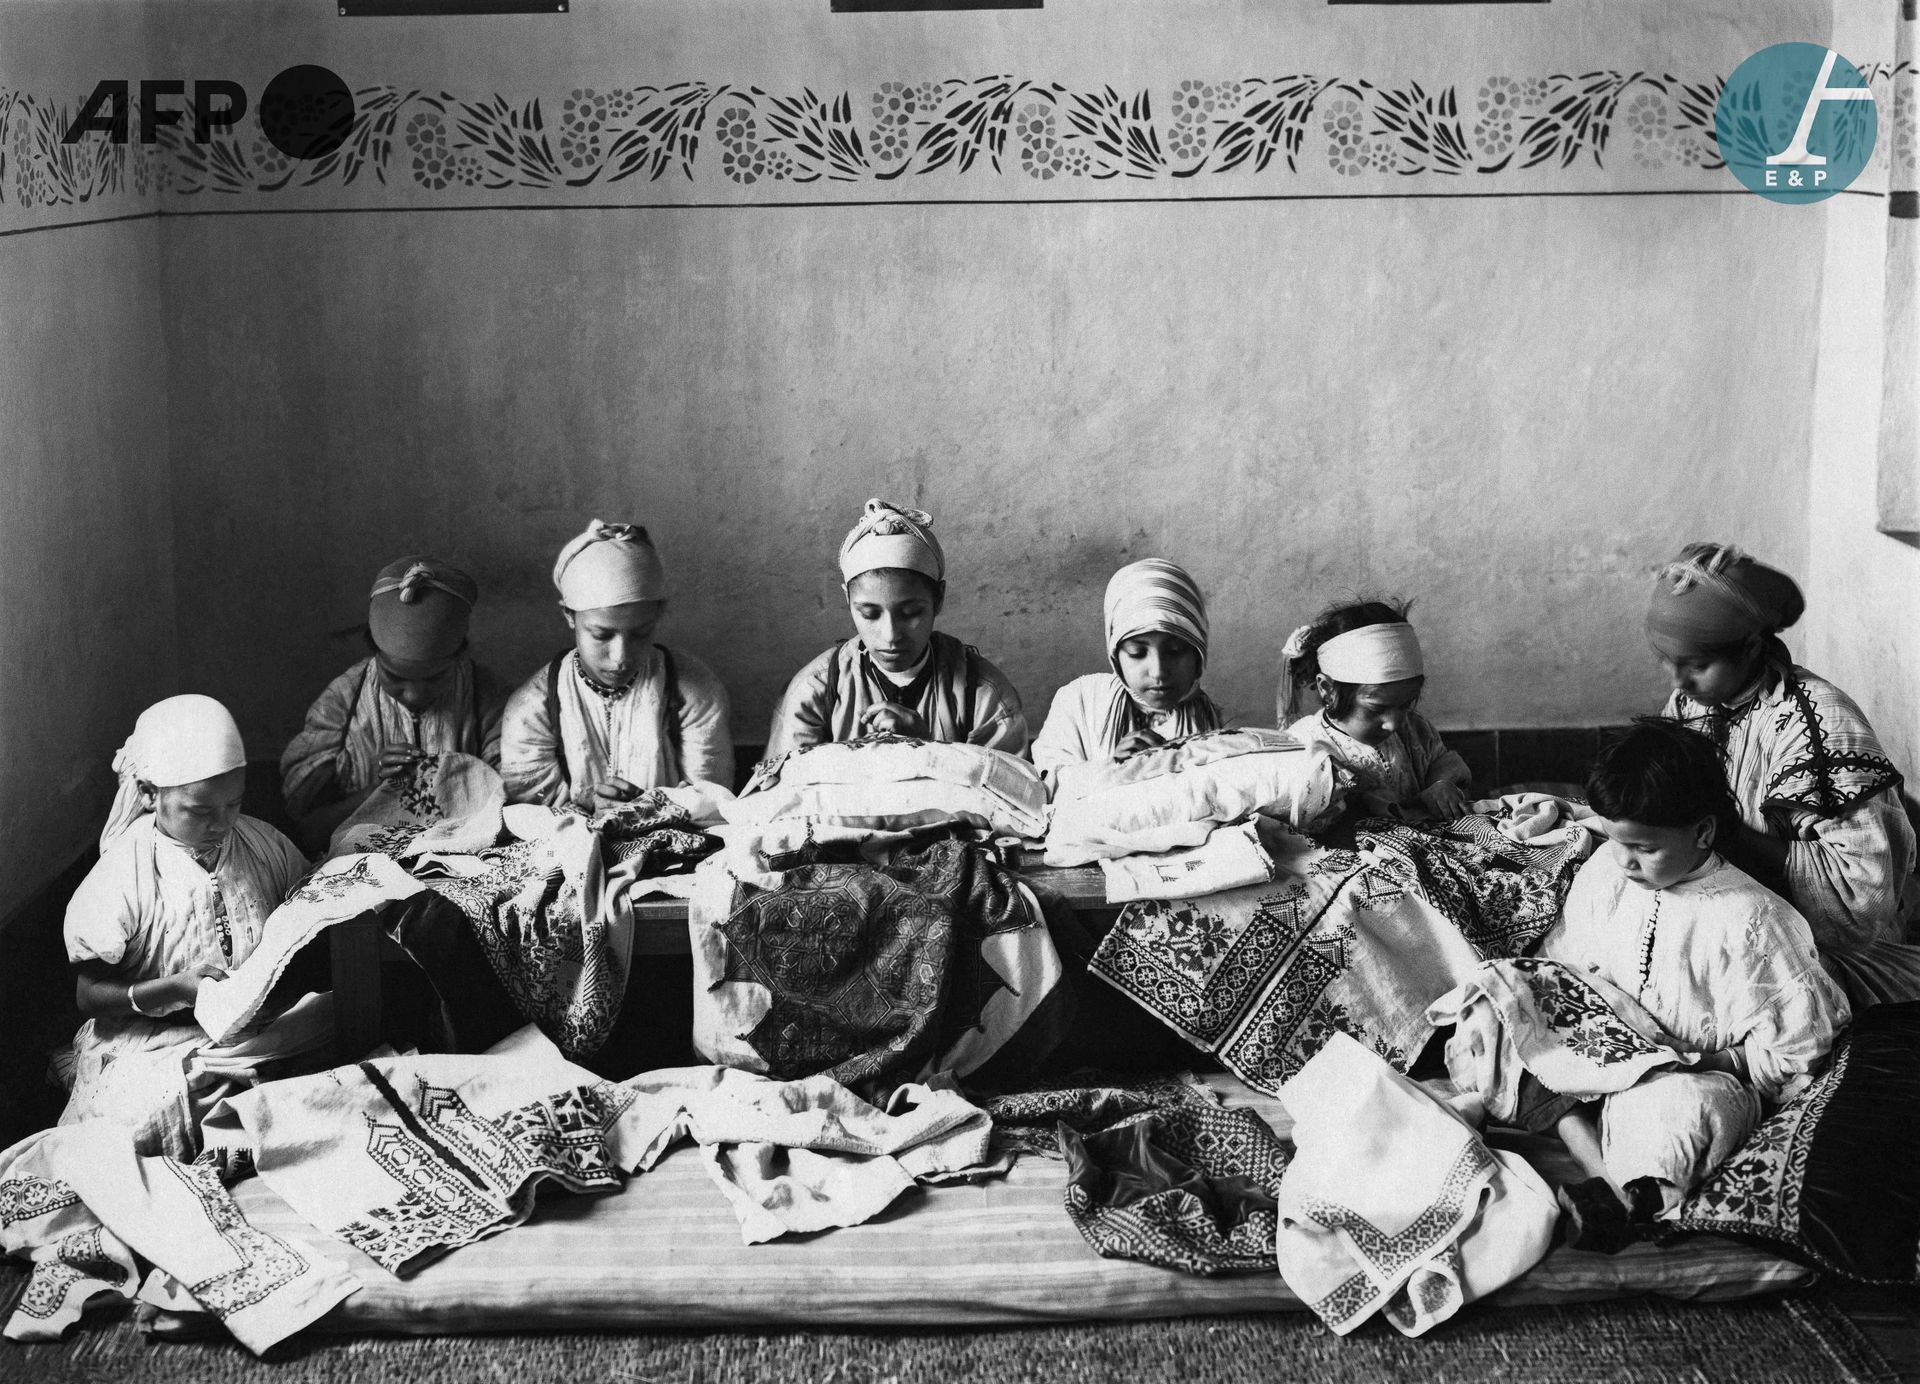 Null AFP

在纺织车间工作的年轻刺绣工人。摩洛哥，1930年代。

在一个纺织车间工作的年轻刺绣者。摩洛哥，1930年代。

巴里塔纸上的银色印刷品，来&hellip;